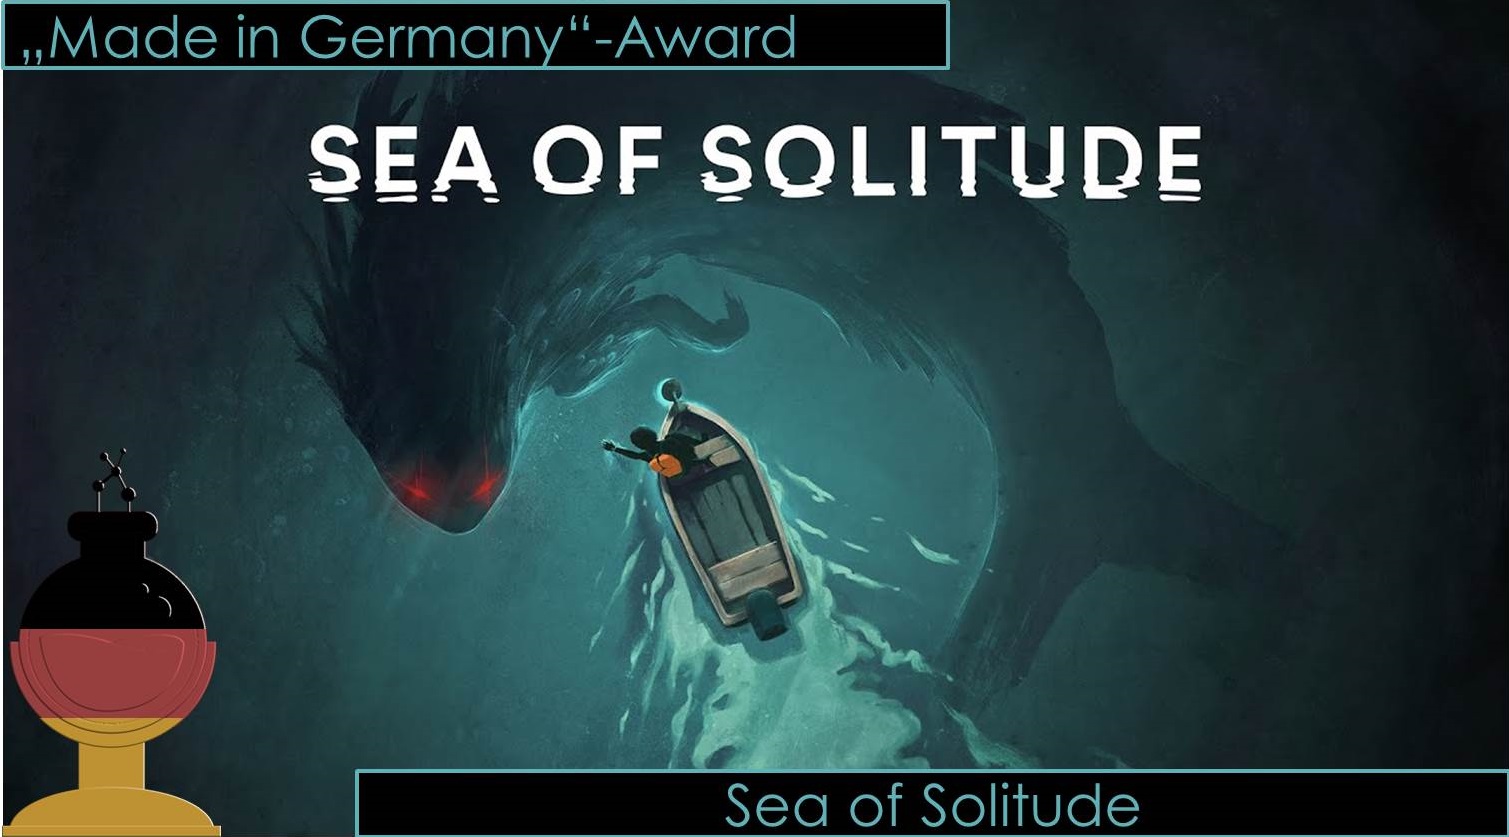 made in germany award e3 2018 awards sea of solitude